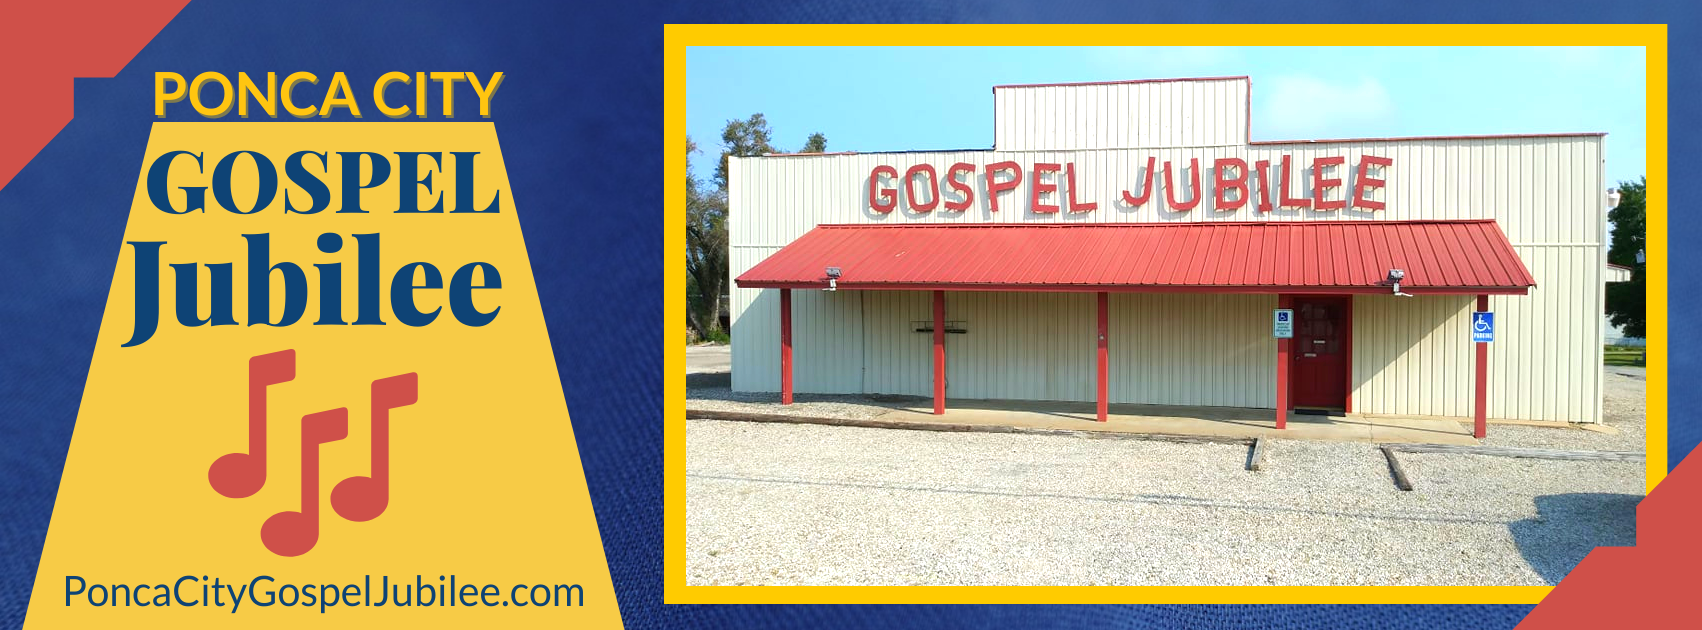 Ponca City Gospel Jubillee